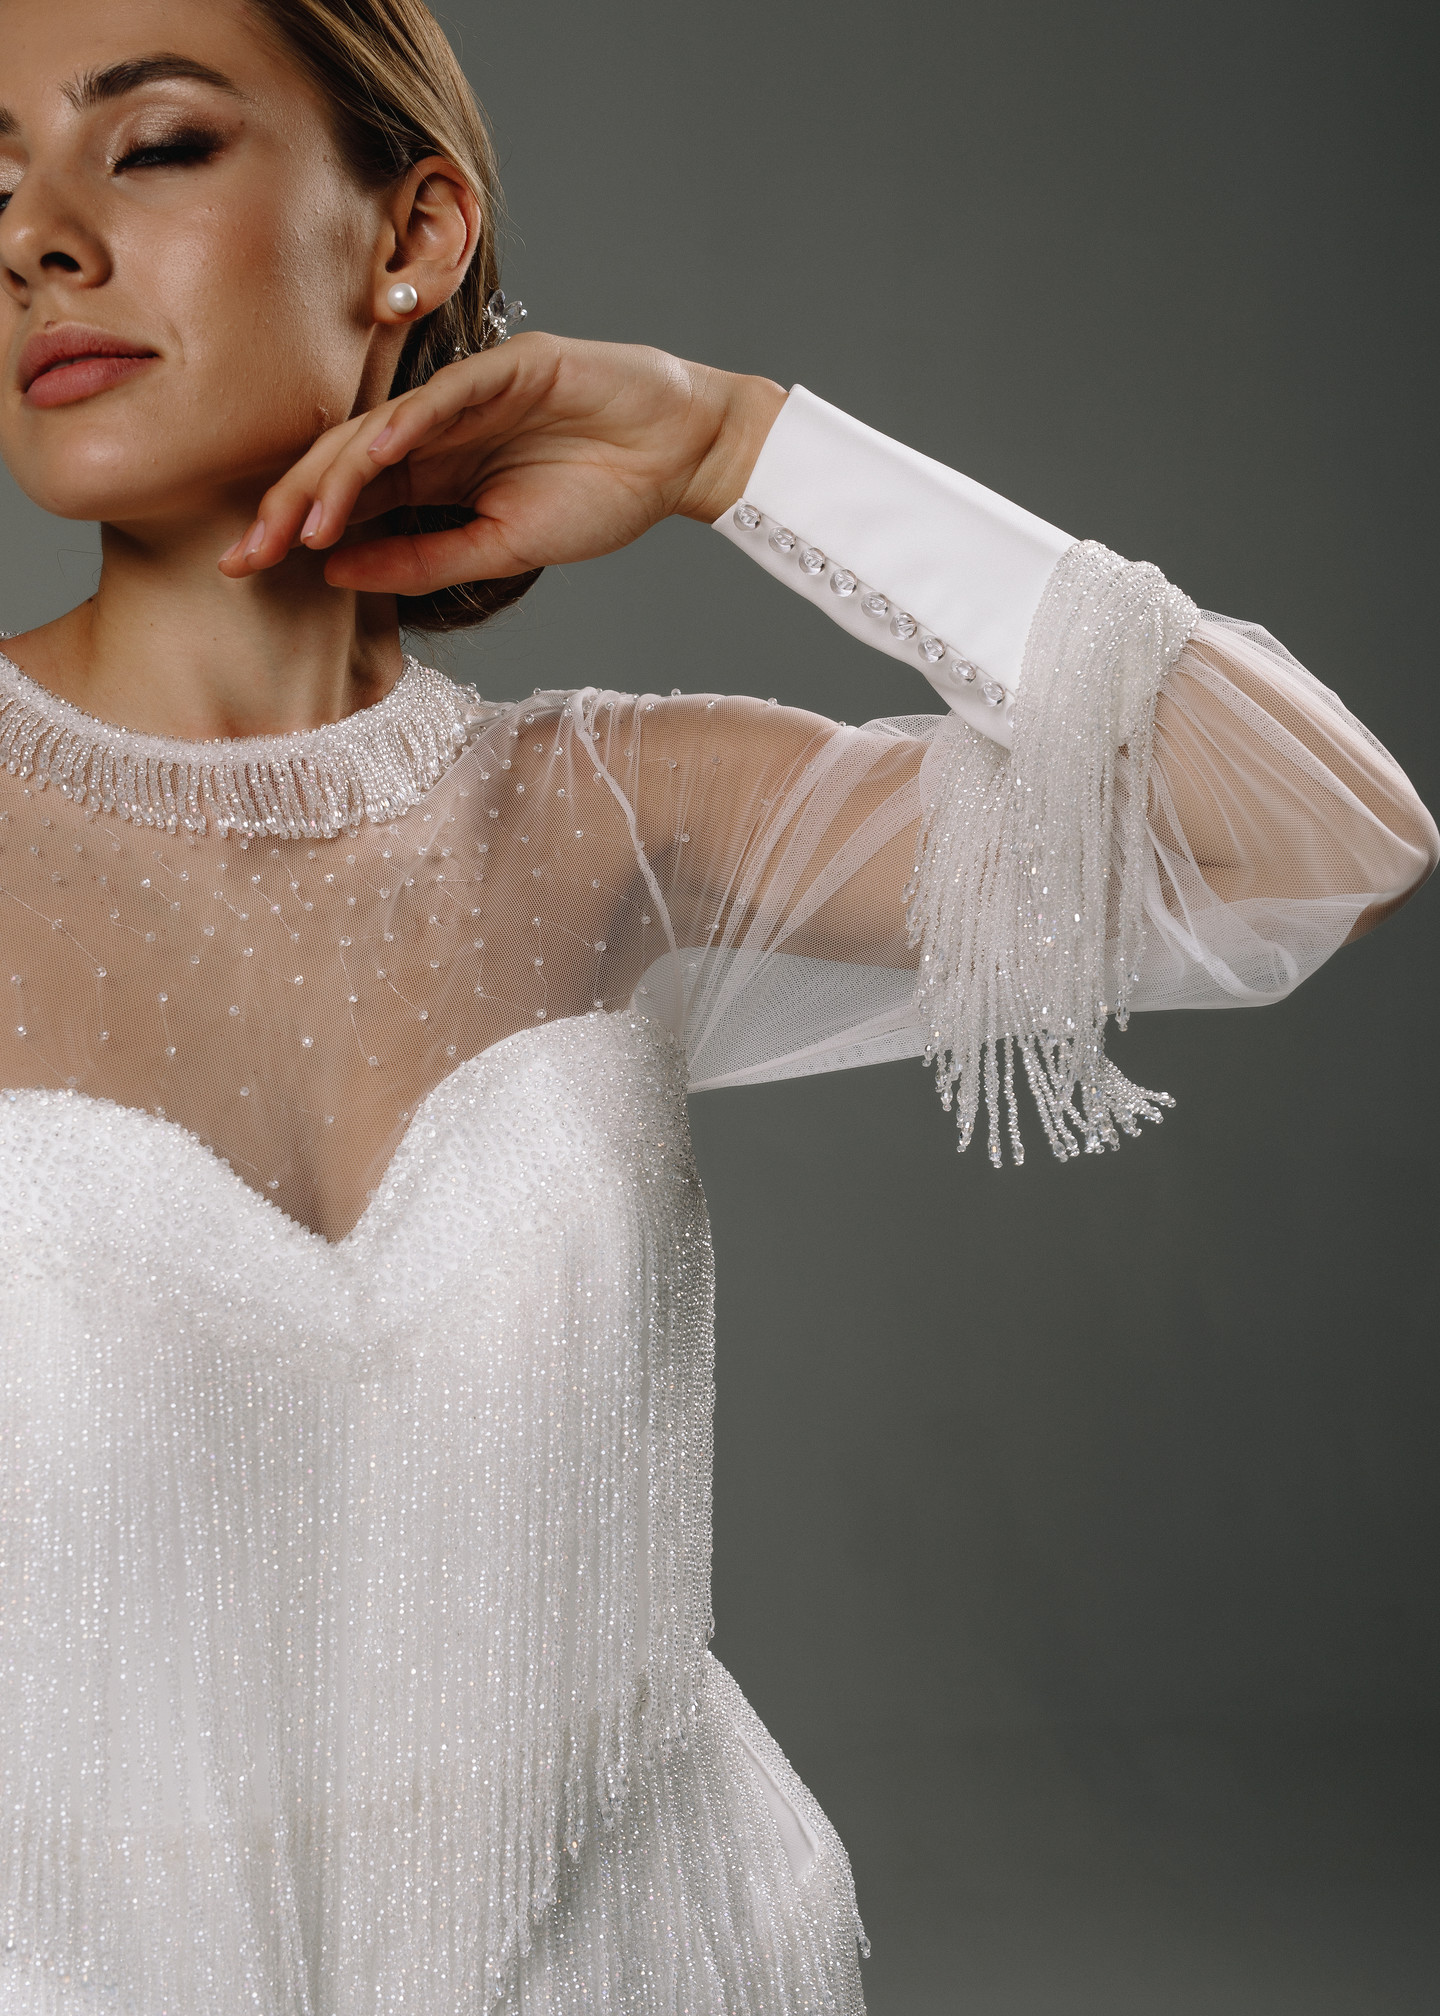 Платье Риана, 2020, одежда, платье, свадебное, молочно-белый, вышивка, русалка, рукава, популярное